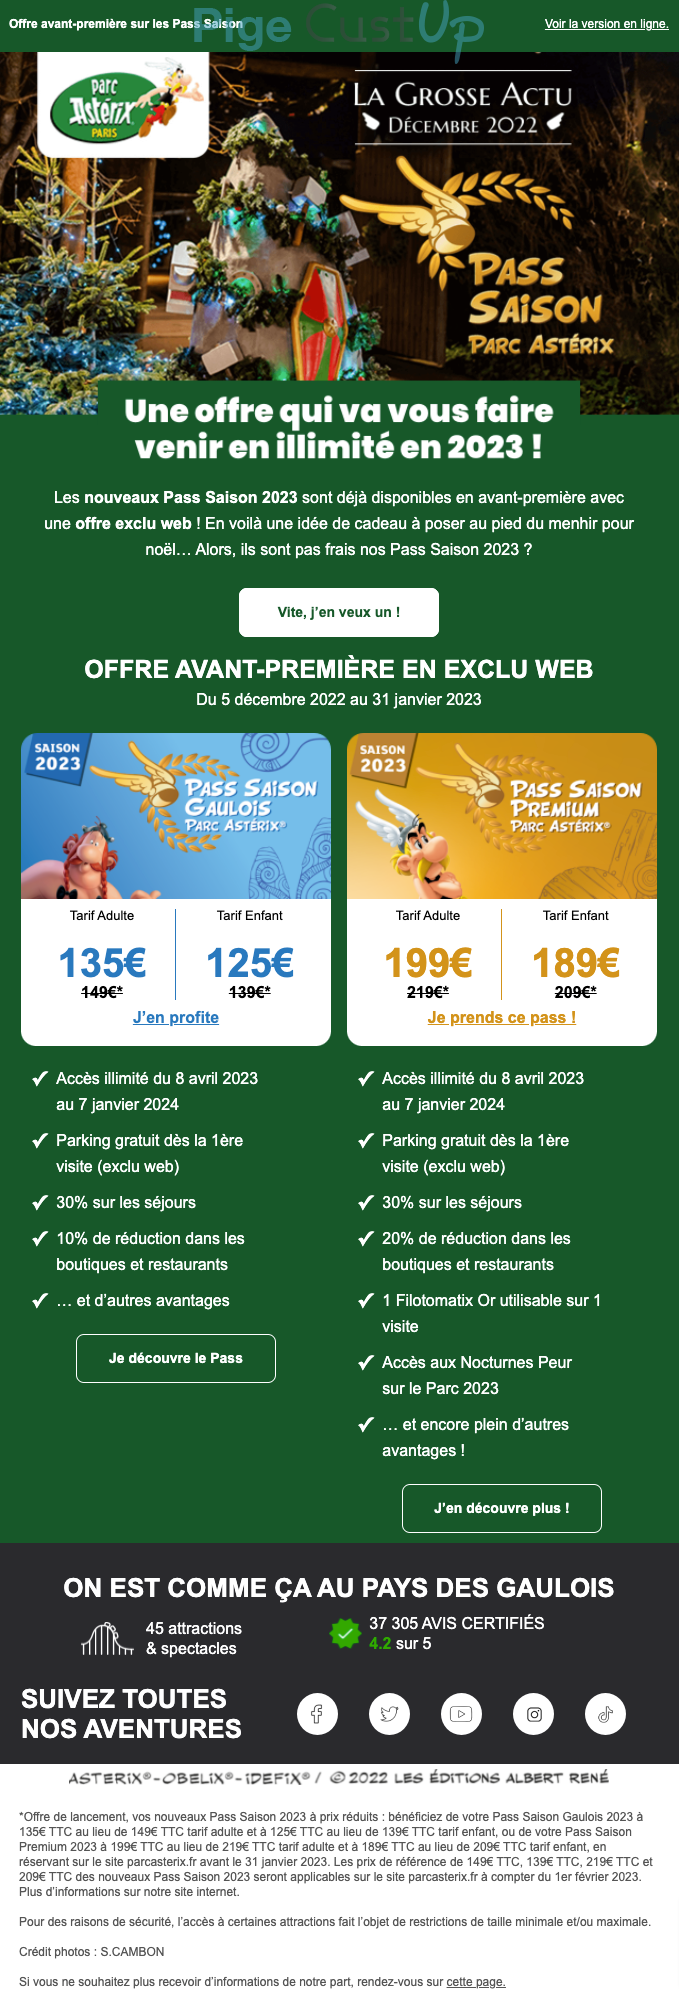 Exemple de Type de media  e-mailing - Parc Astérix - Marketing Acquisition - Acquisition abonnements